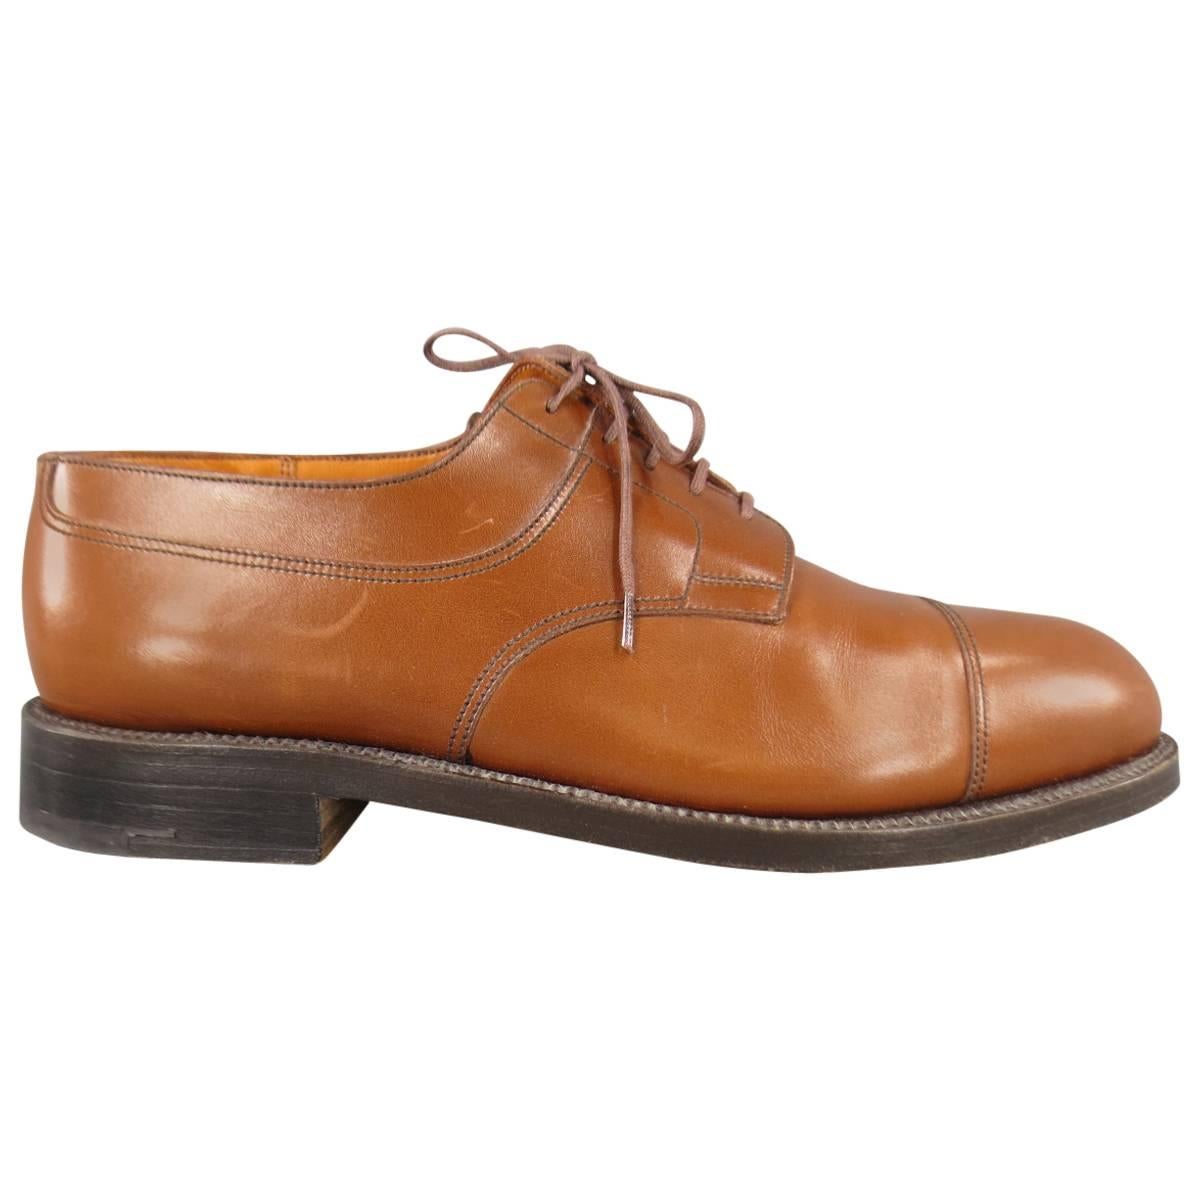 Vintage J.M. WESTON Size 9 Tan Leather Cap Toe Lace Up Dress Shoes